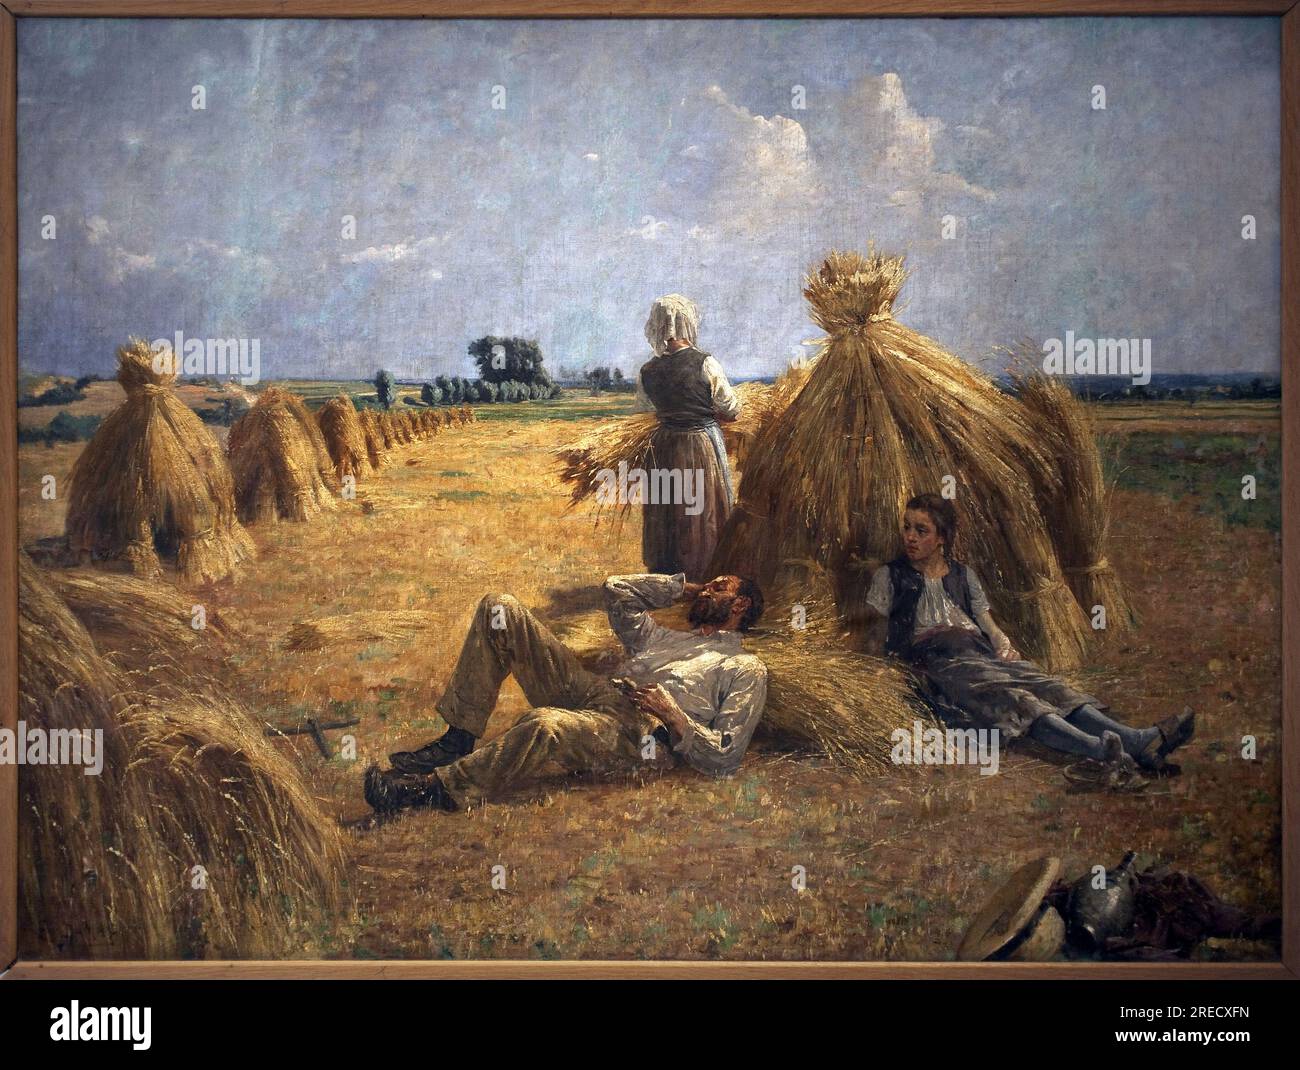 Midi. Peinture de Eugene Damas (1844-1899), huile sur toile, 1893, 116 x 89 cm. Art francais, 19e Siecle. Musée de l'Ardenne, Charleville Mezieres. Stockfoto